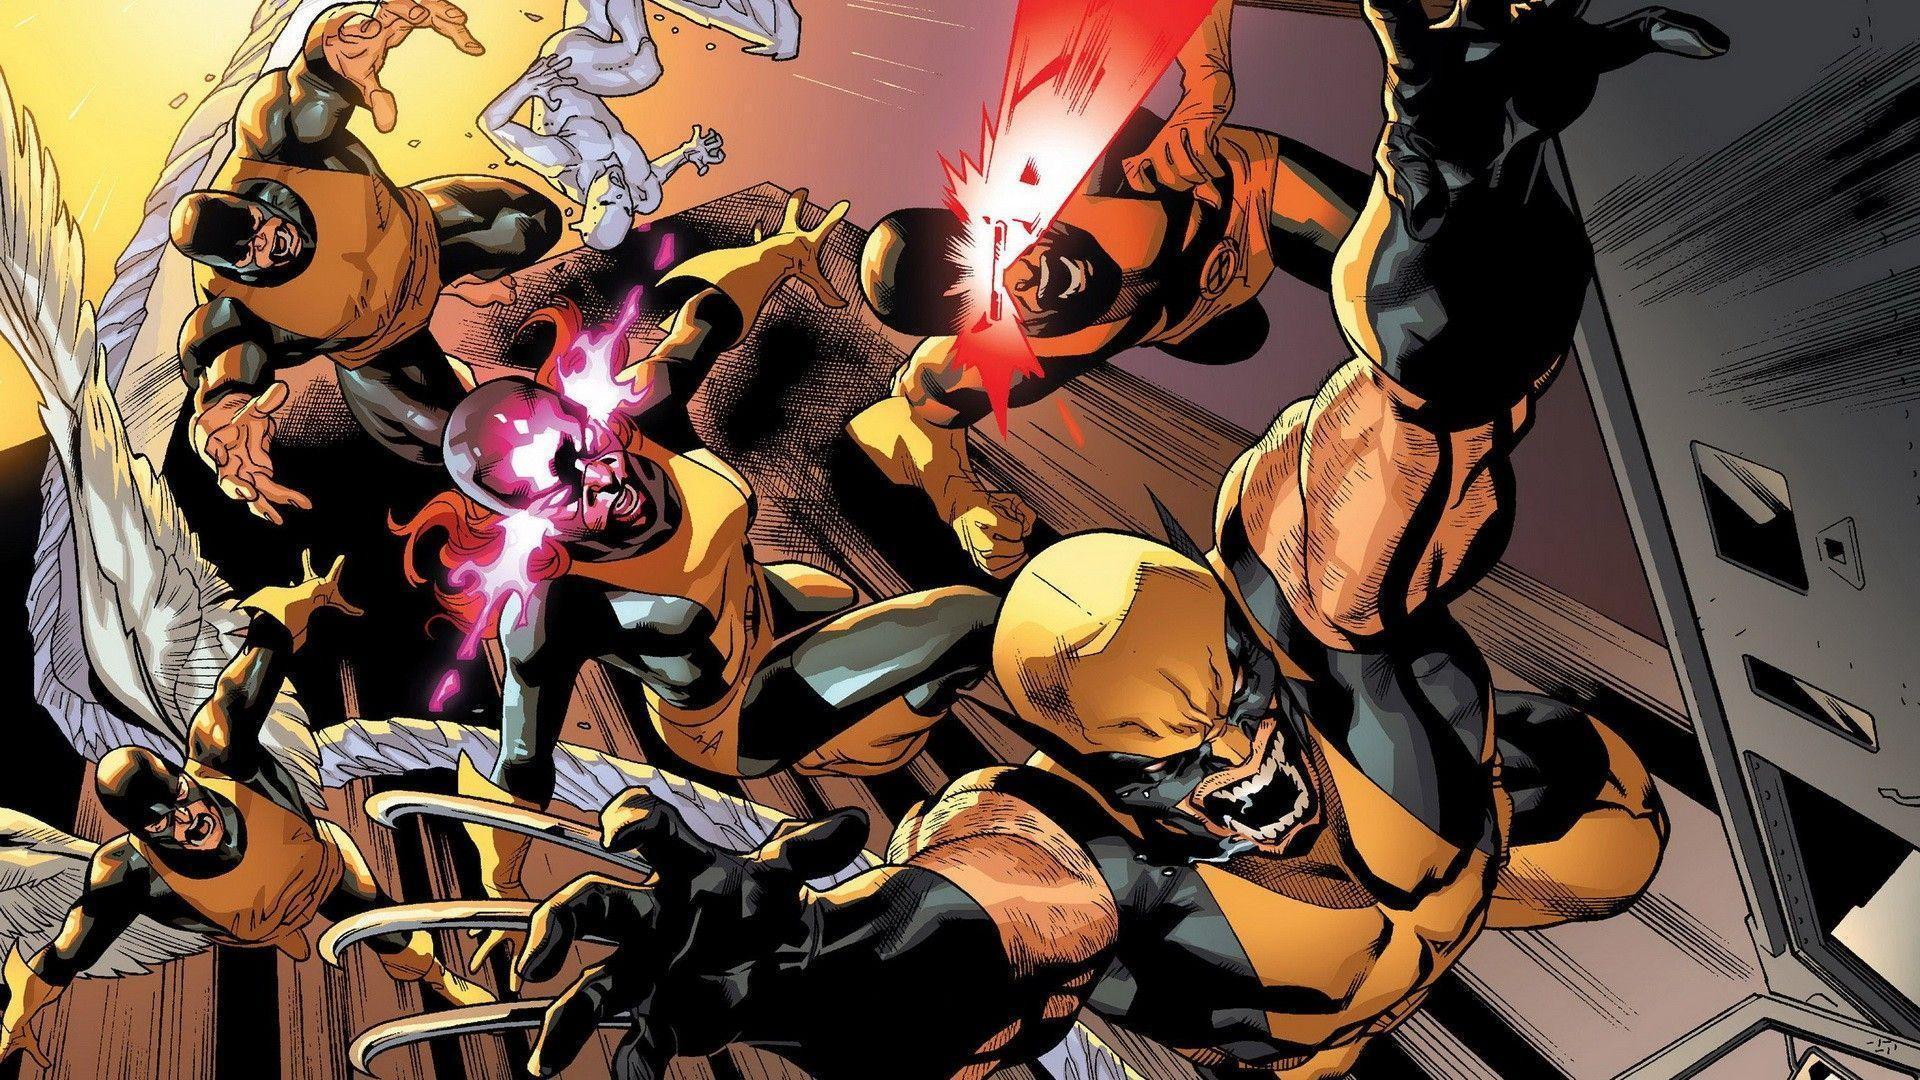 image For > X Men Comics Wallpaper